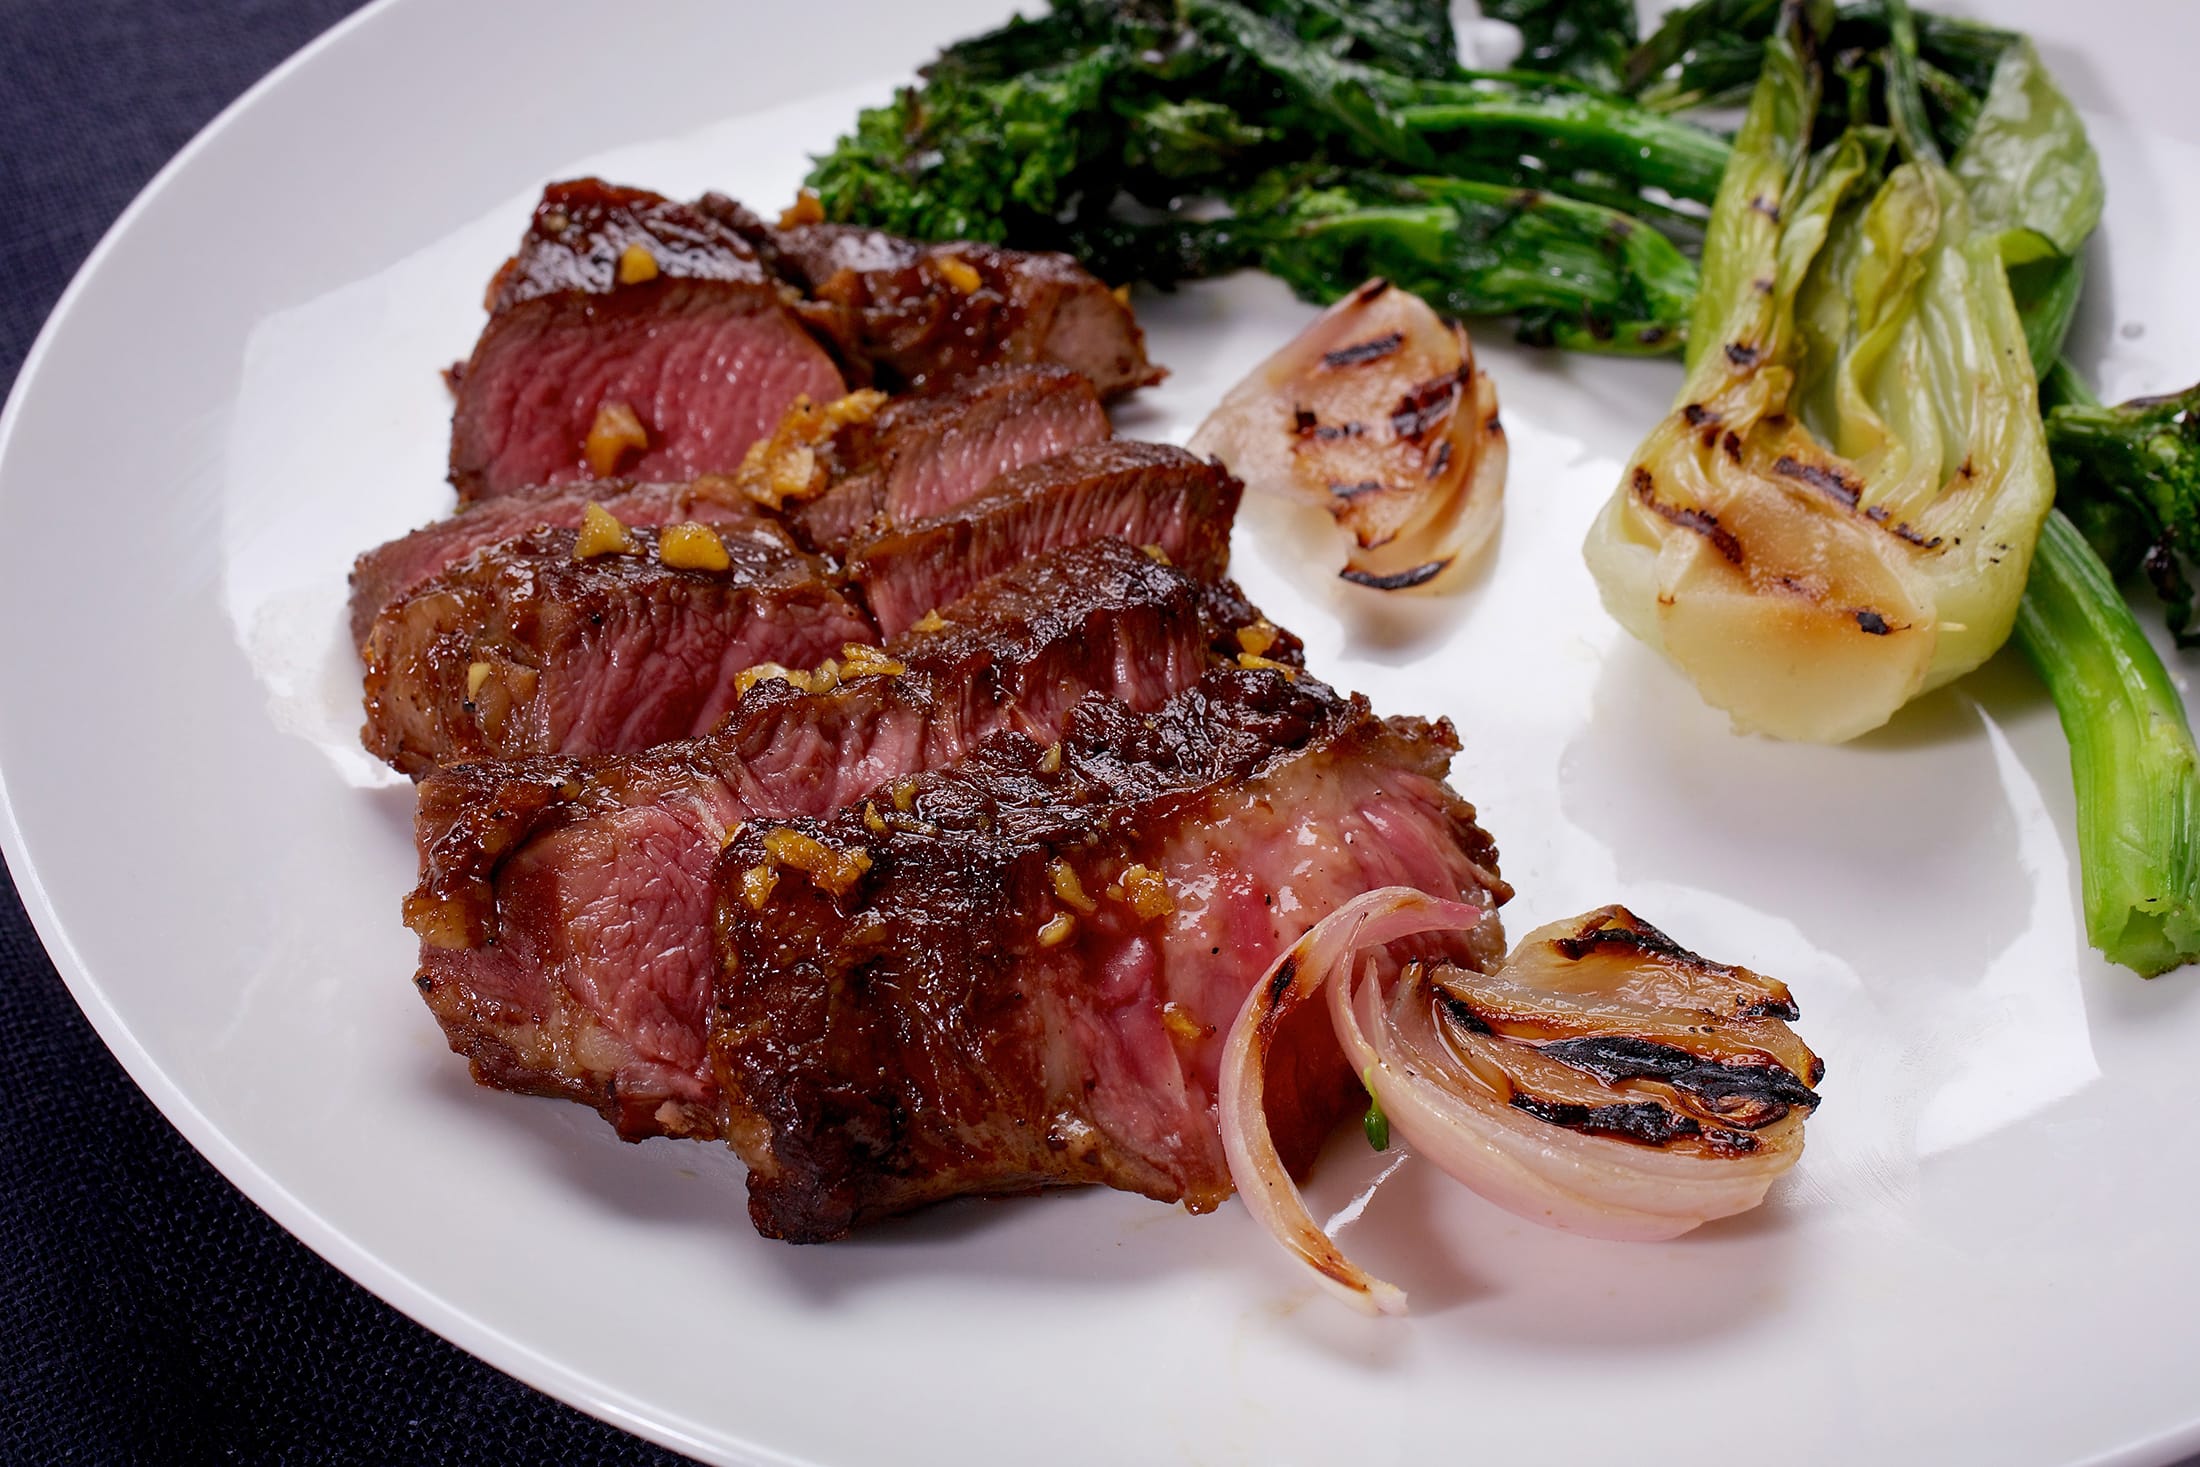 Teriyaki-Glazed Steak With Broccoli Rabe.